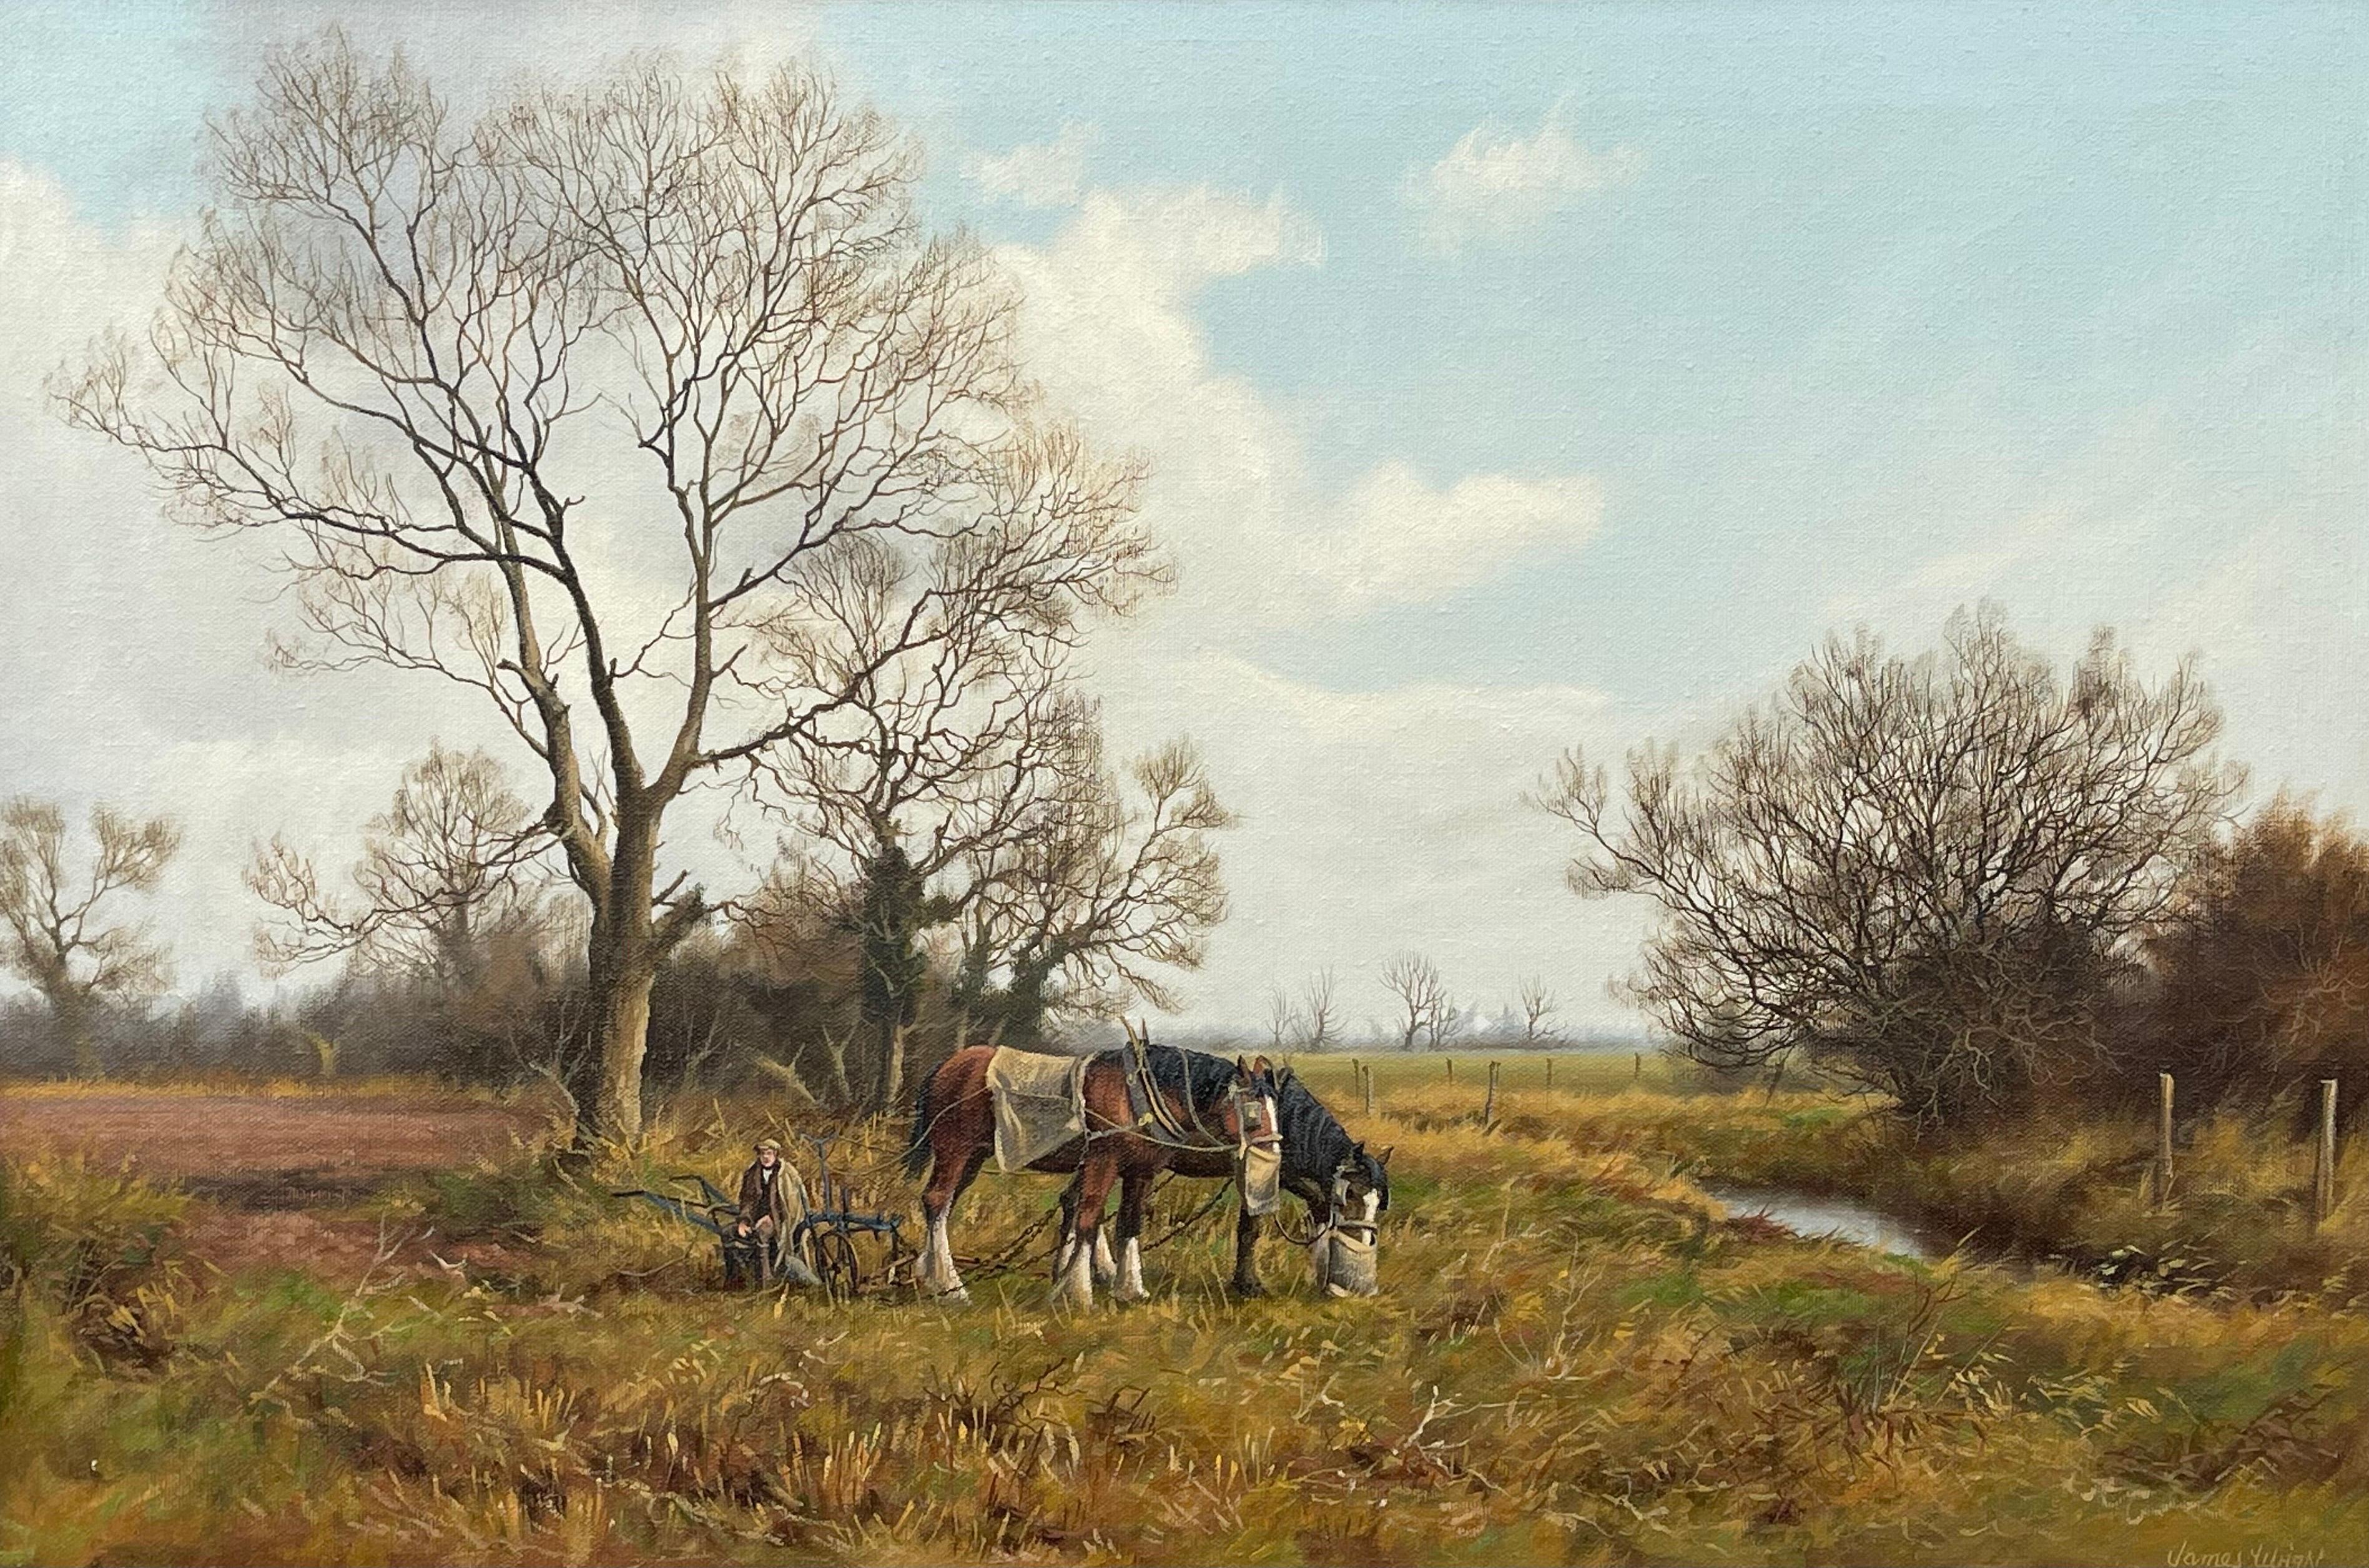 Gemälde einer englischen Landschaft mit Pferden und Pflug von einem modernen britischen Künstler (Realismus), Painting, von James Wright